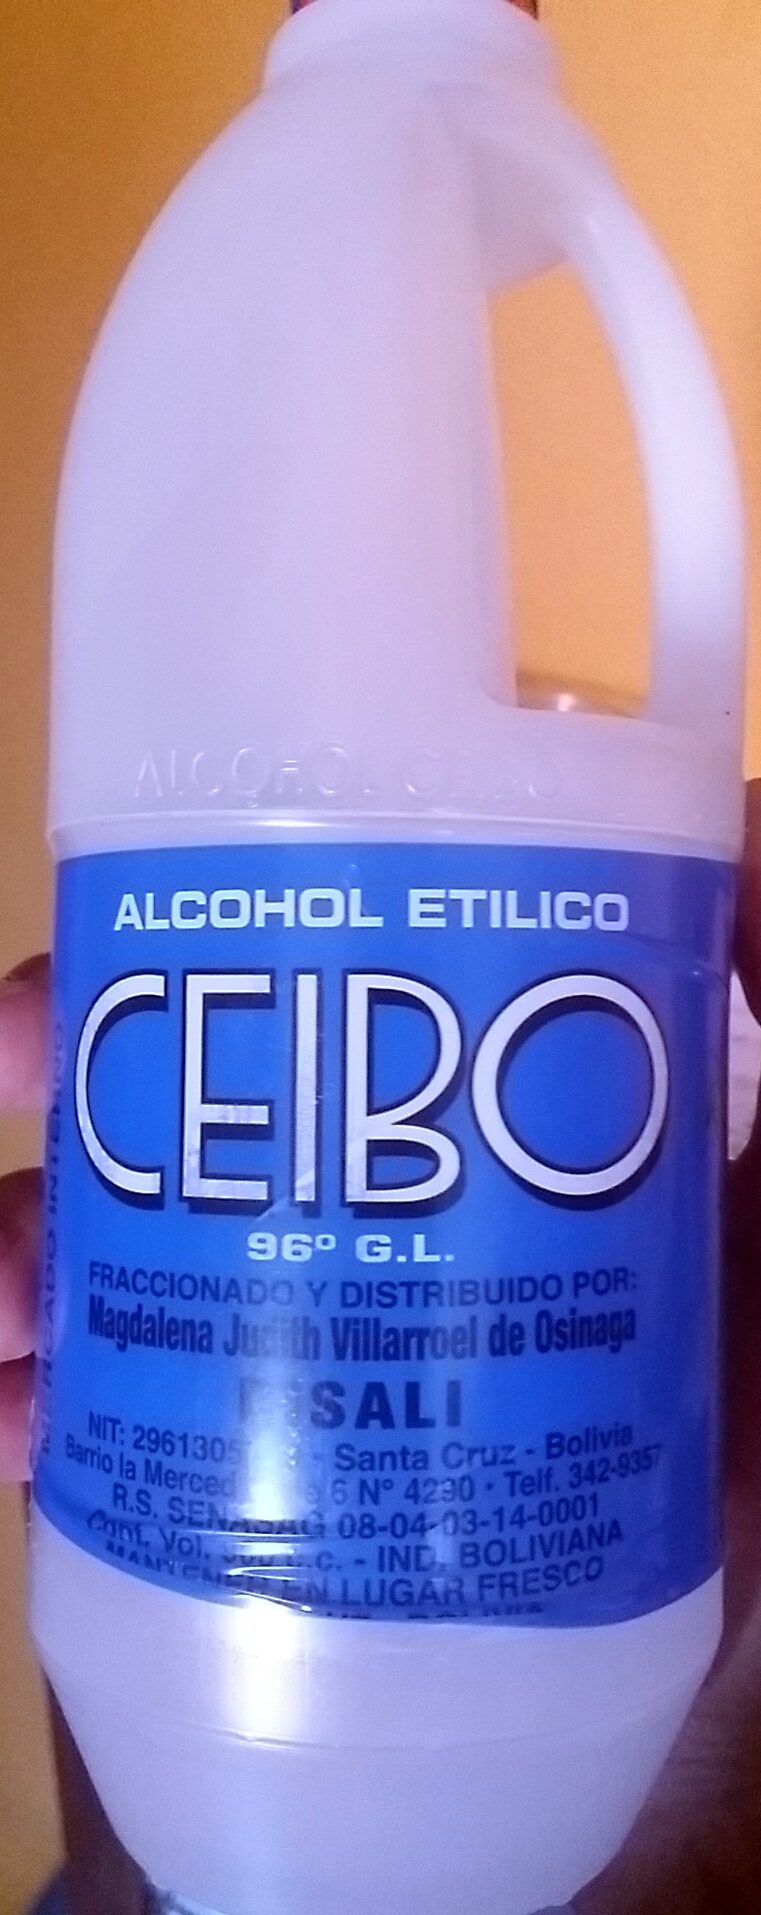 Alcohol Etílico Ceibo - Product - es